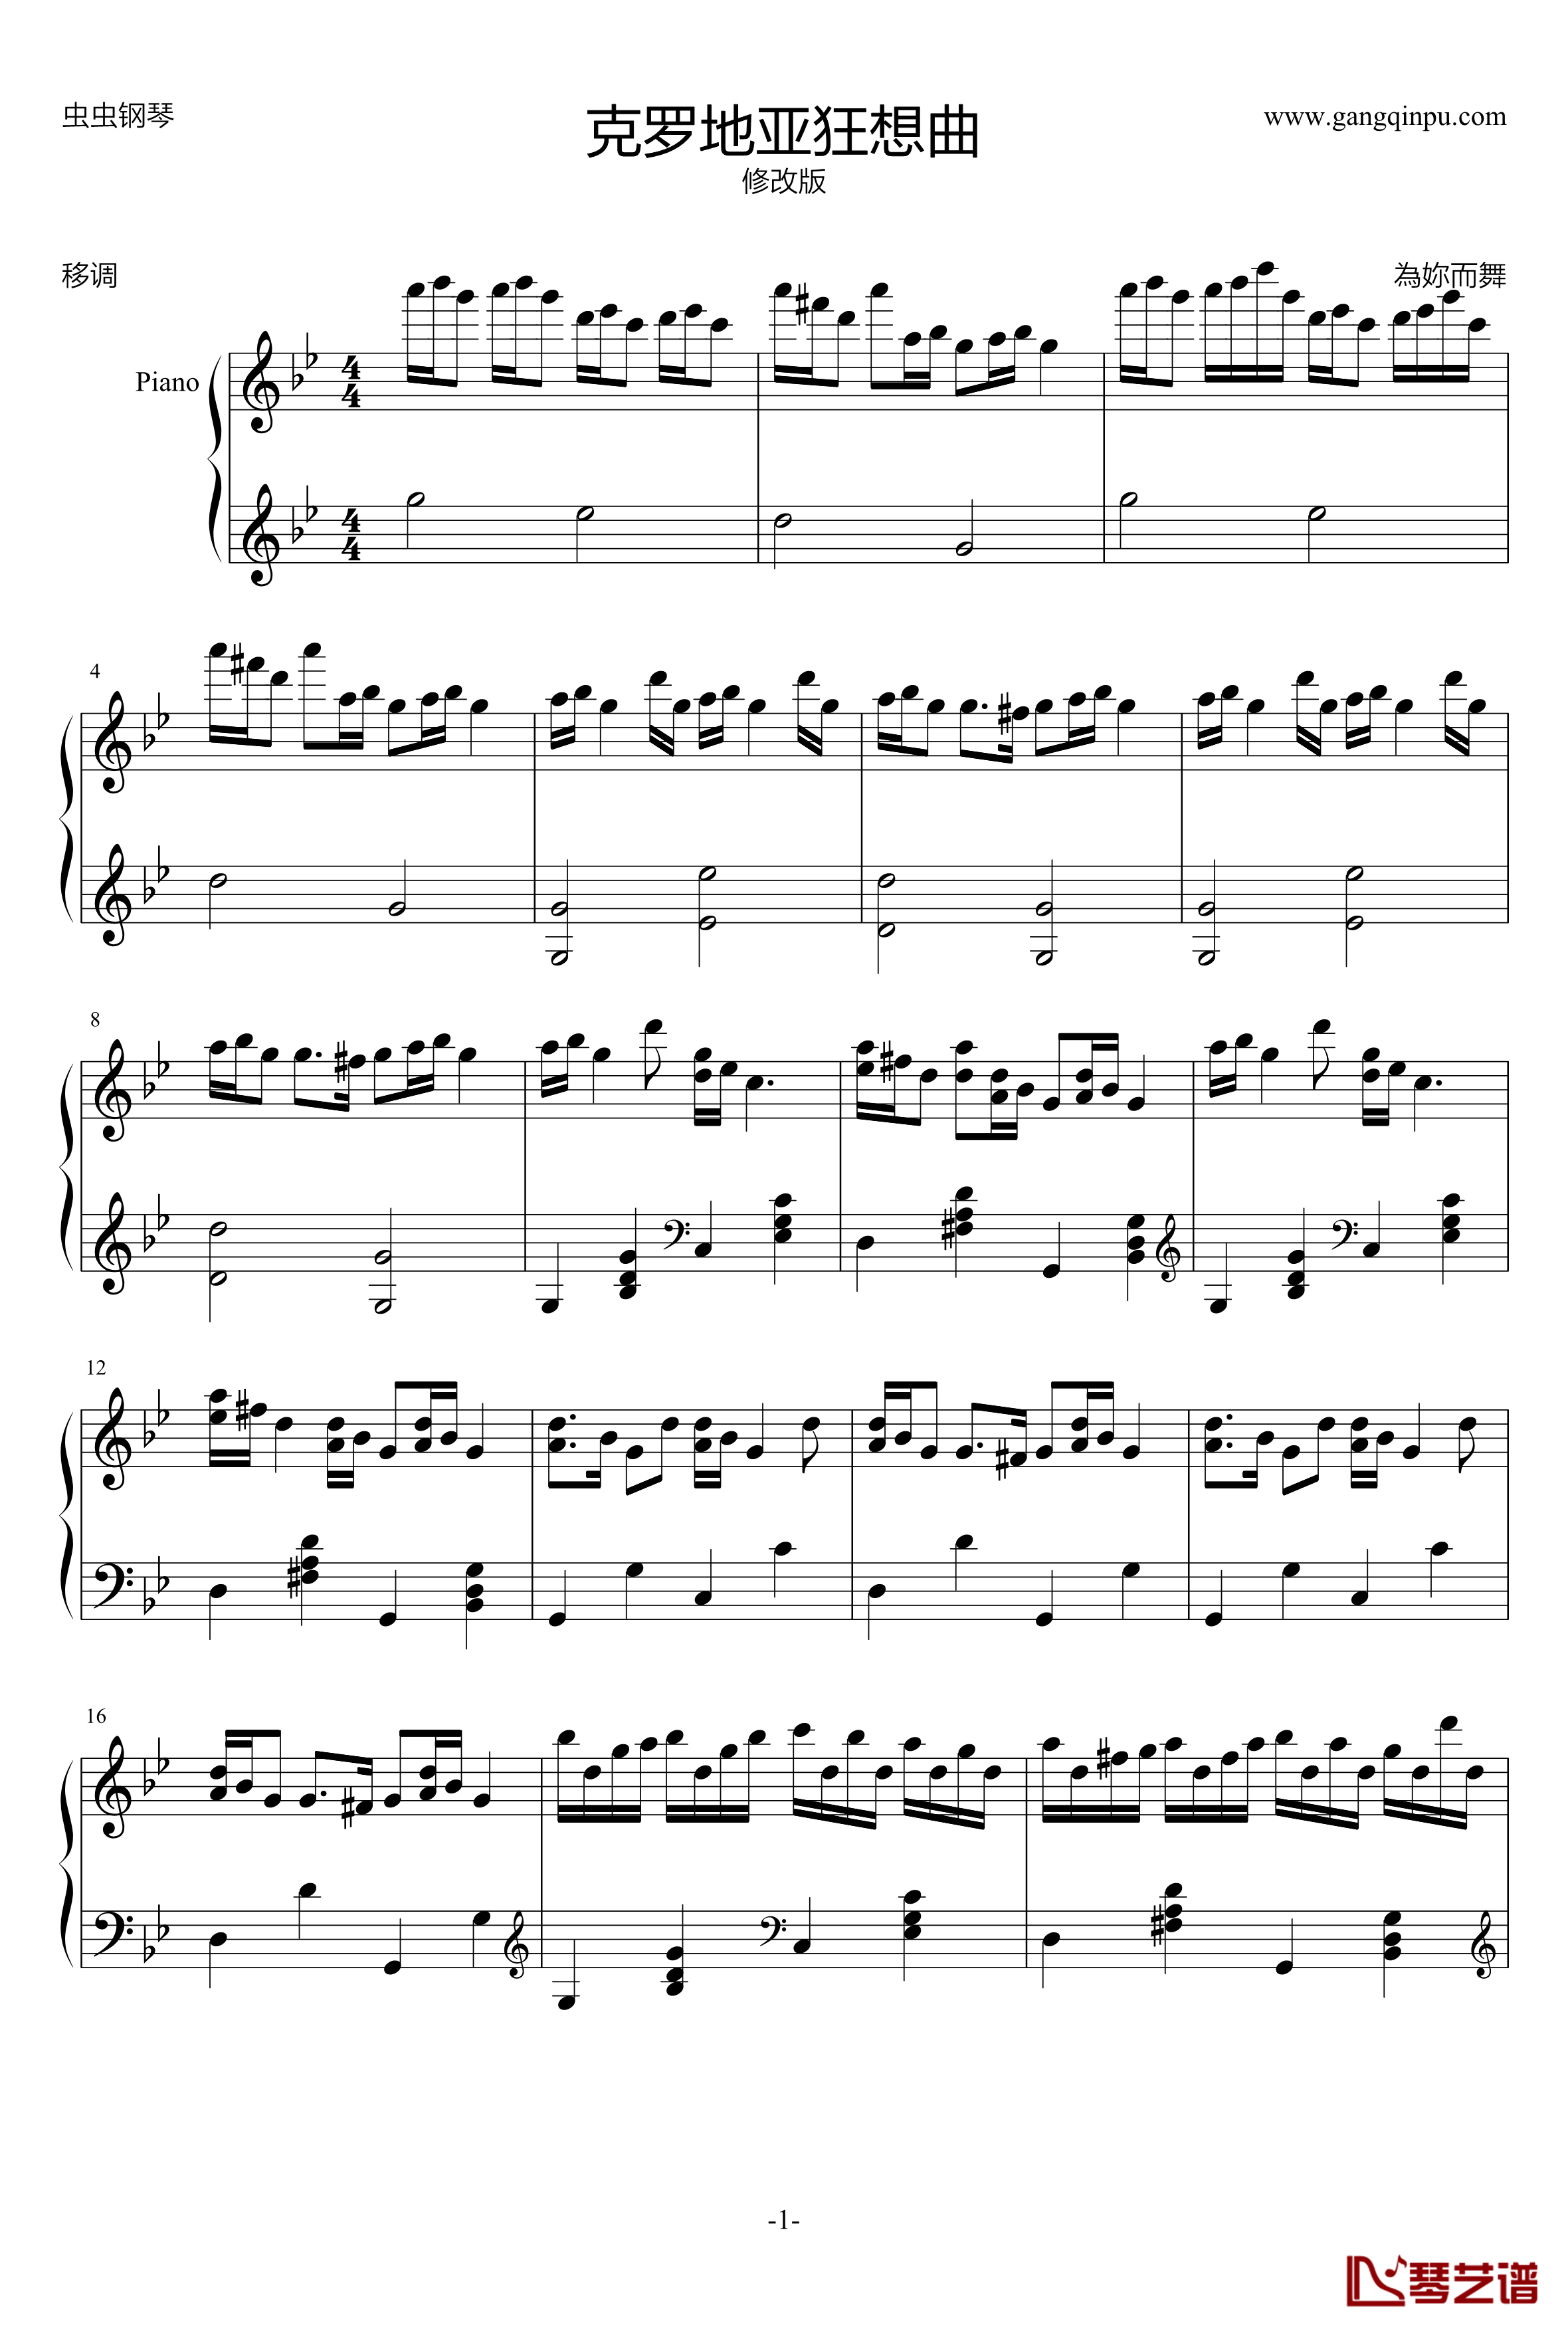 克罗地亚狂想曲钢琴谱-移调修改版-马克西姆-Maksim·Mrvica1